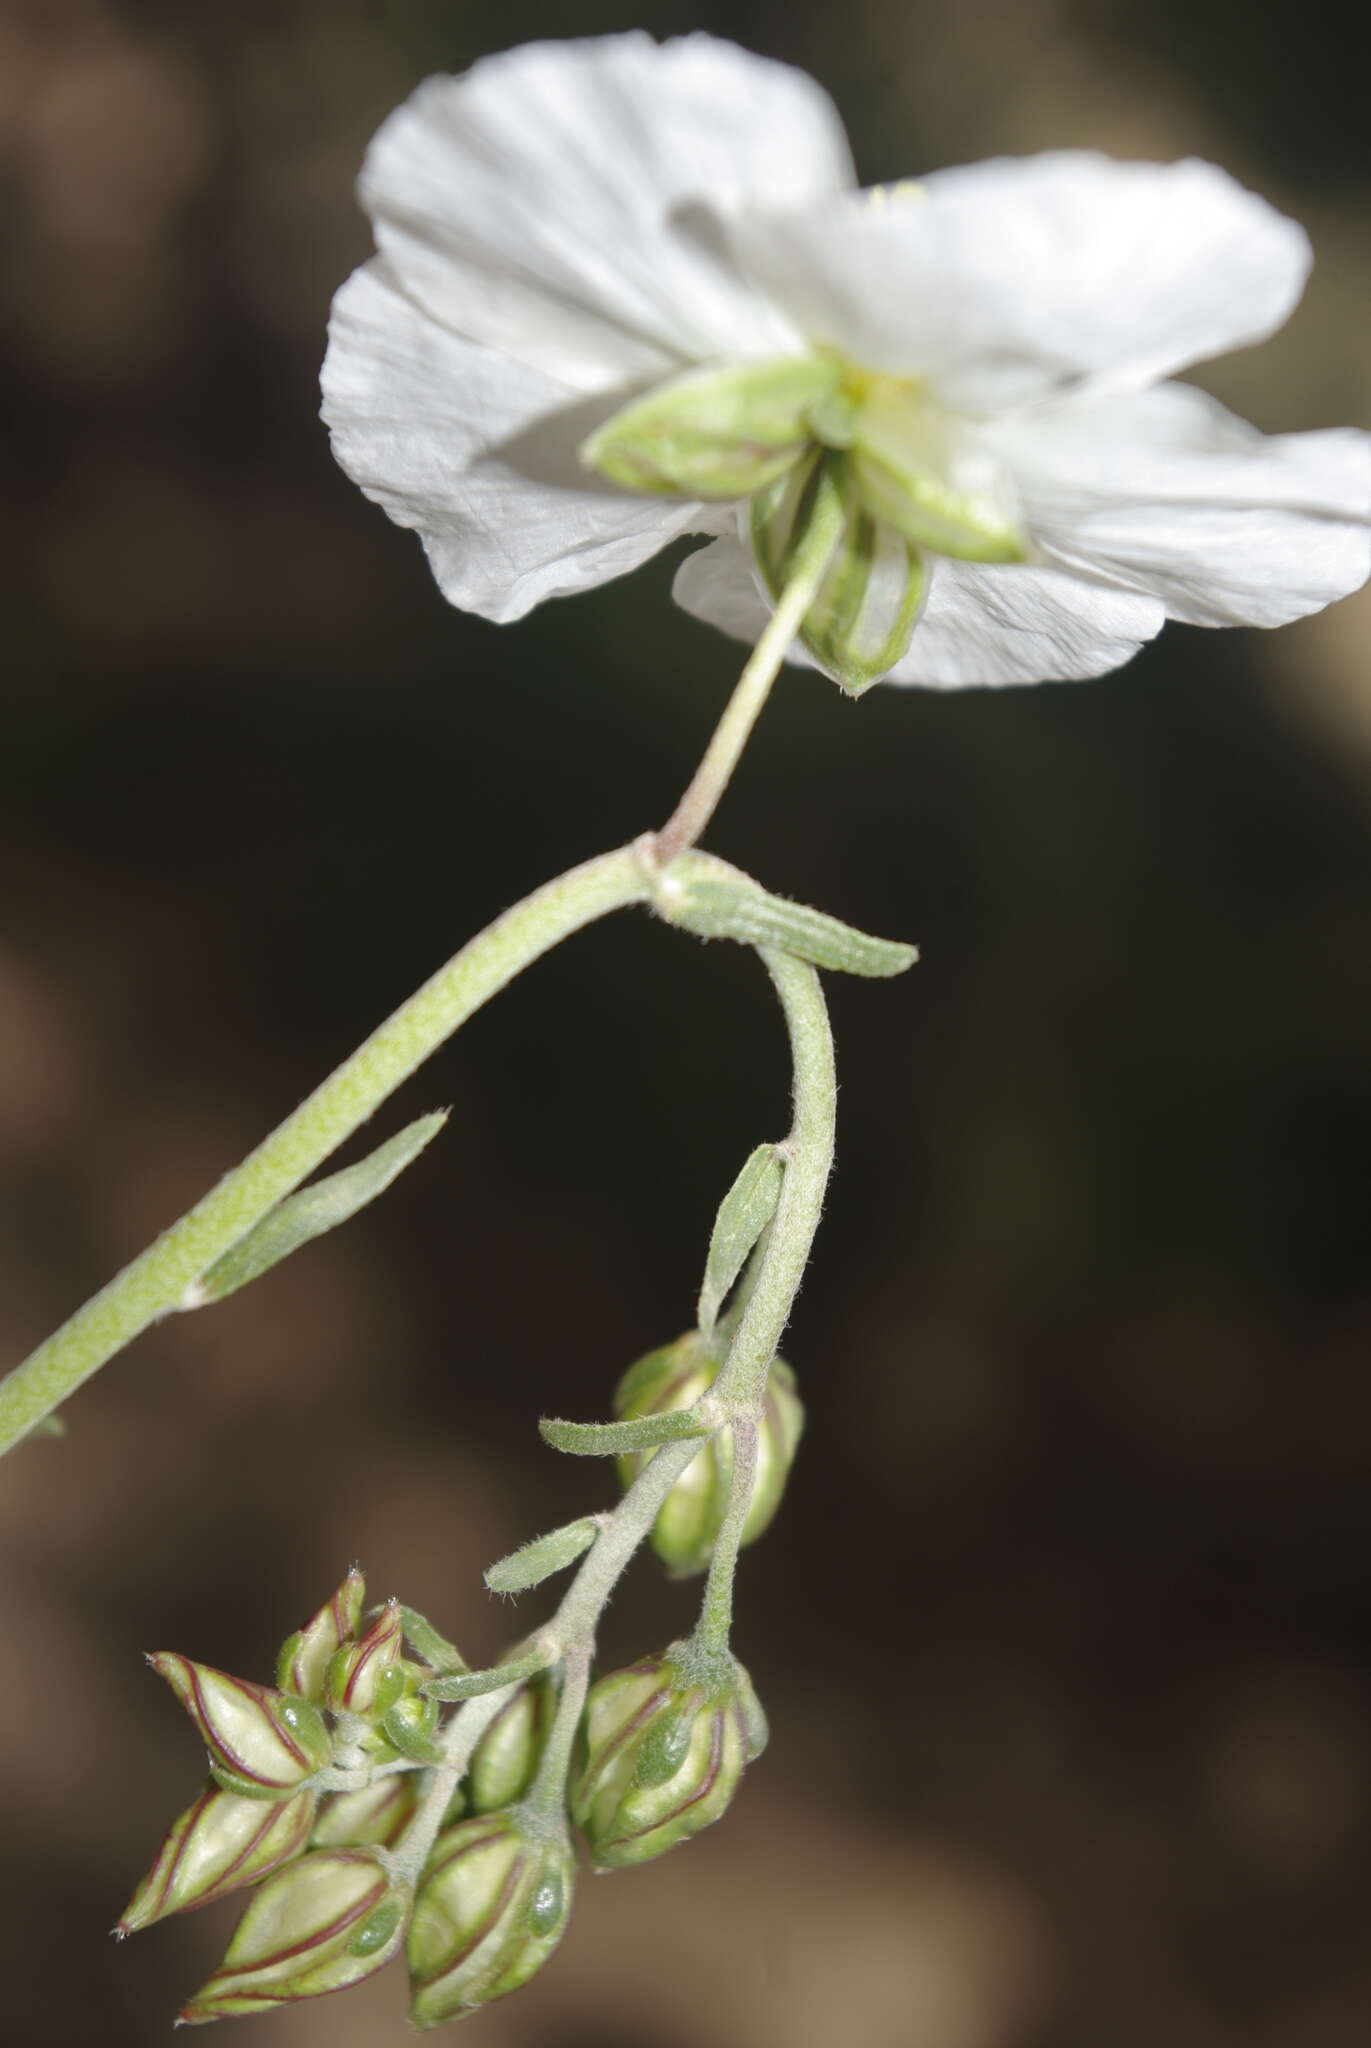 Sivun Helianthemum pergamaceum Pomel kuva